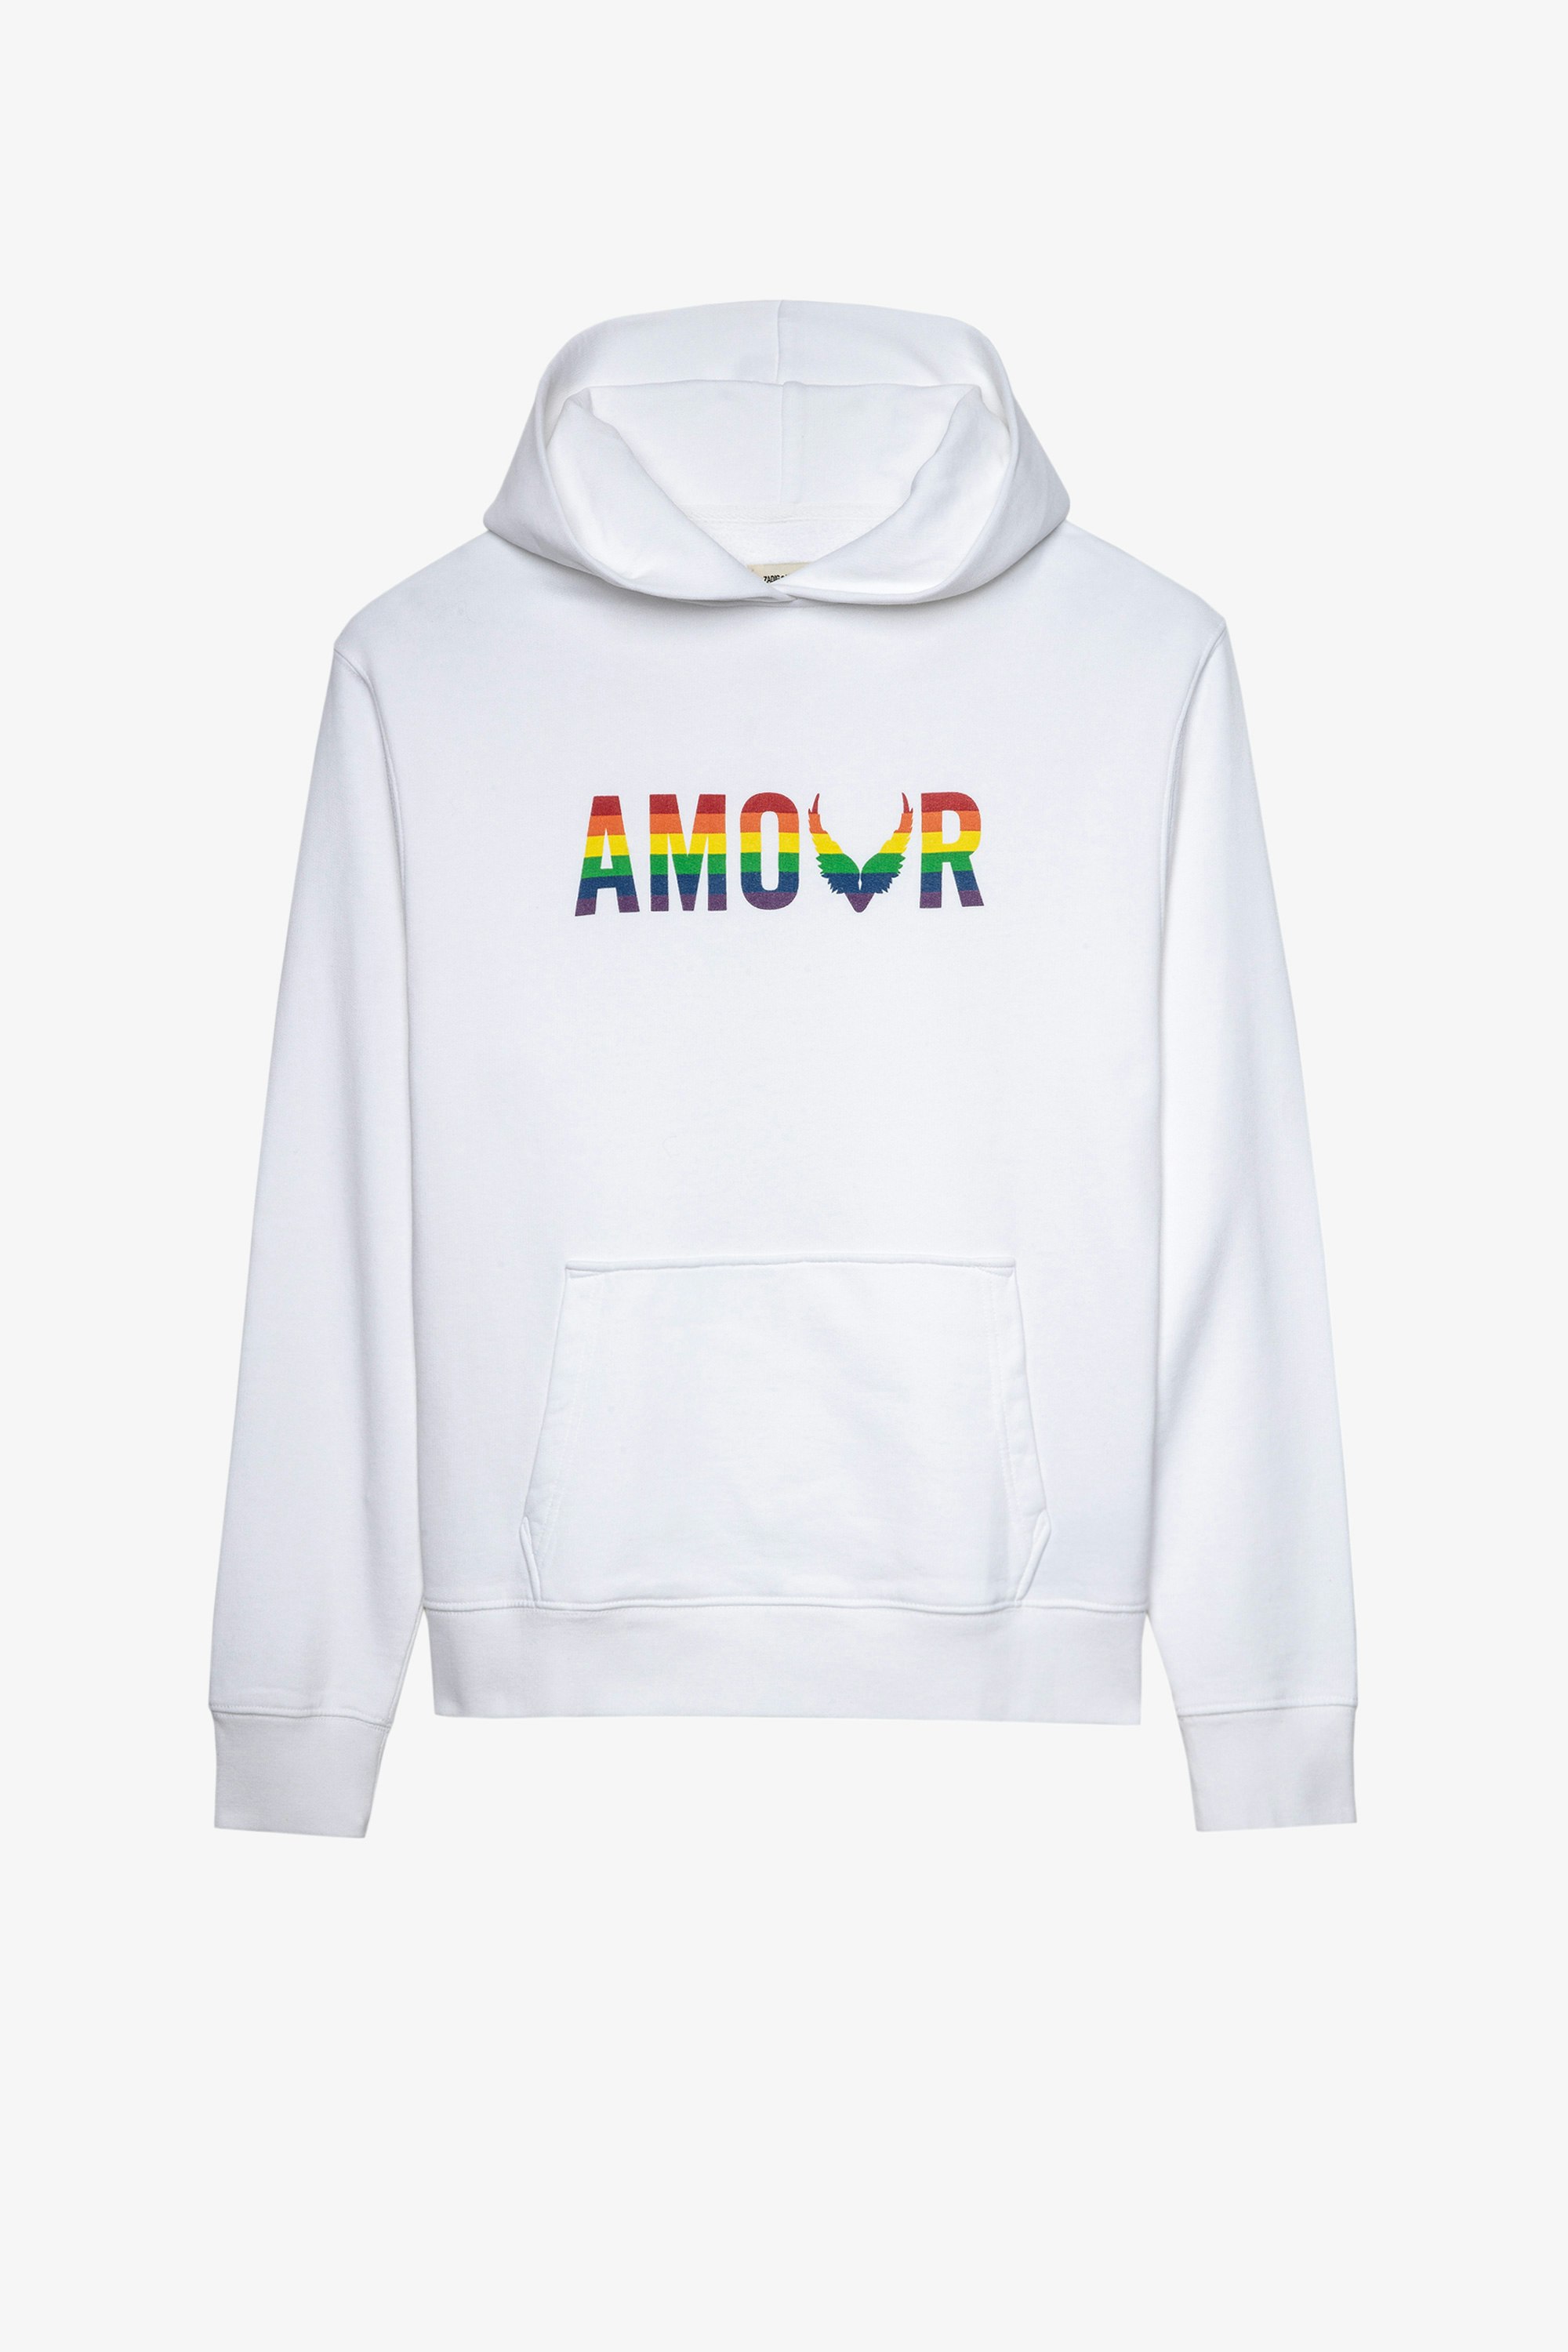 Sweatshirt Sanchi Amour Wings Kapuzen-Sweatshirt für Damen aus weißer Baumwolle mit mehrfarbigem Amour-Aufdruck